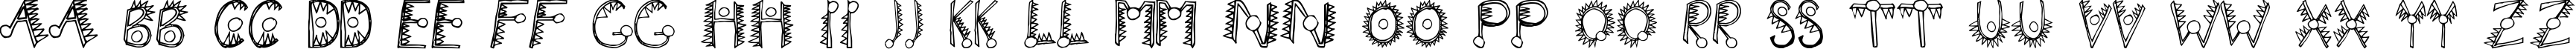 Пример написания английского алфавита шрифтом Hathor